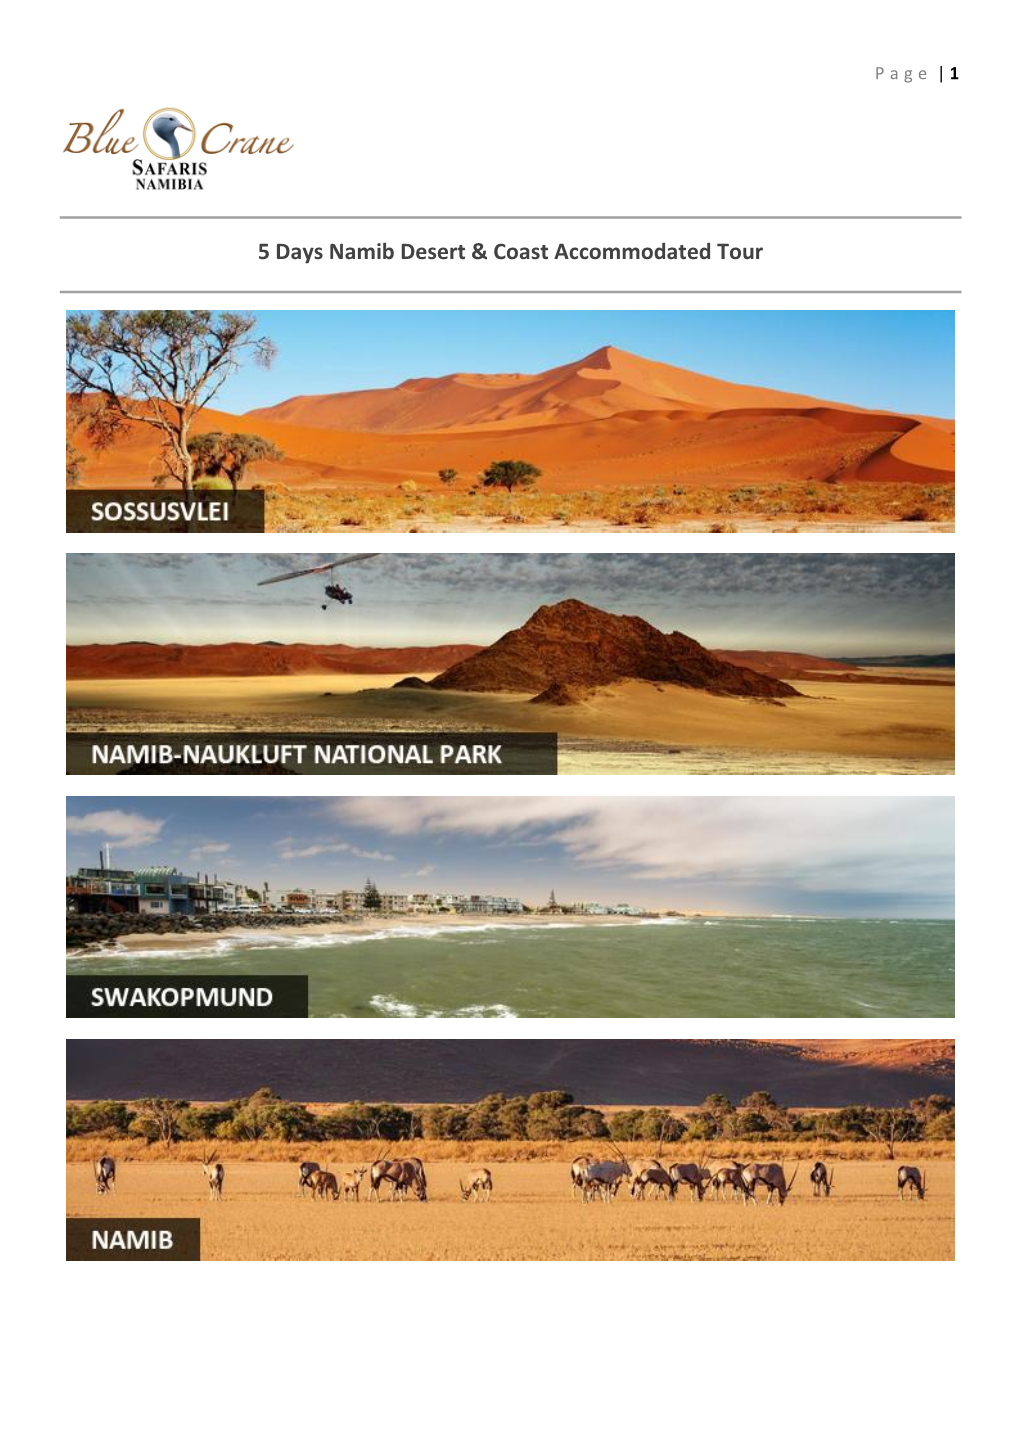 5 Days Namib Desert & Coast Accommodated Tour